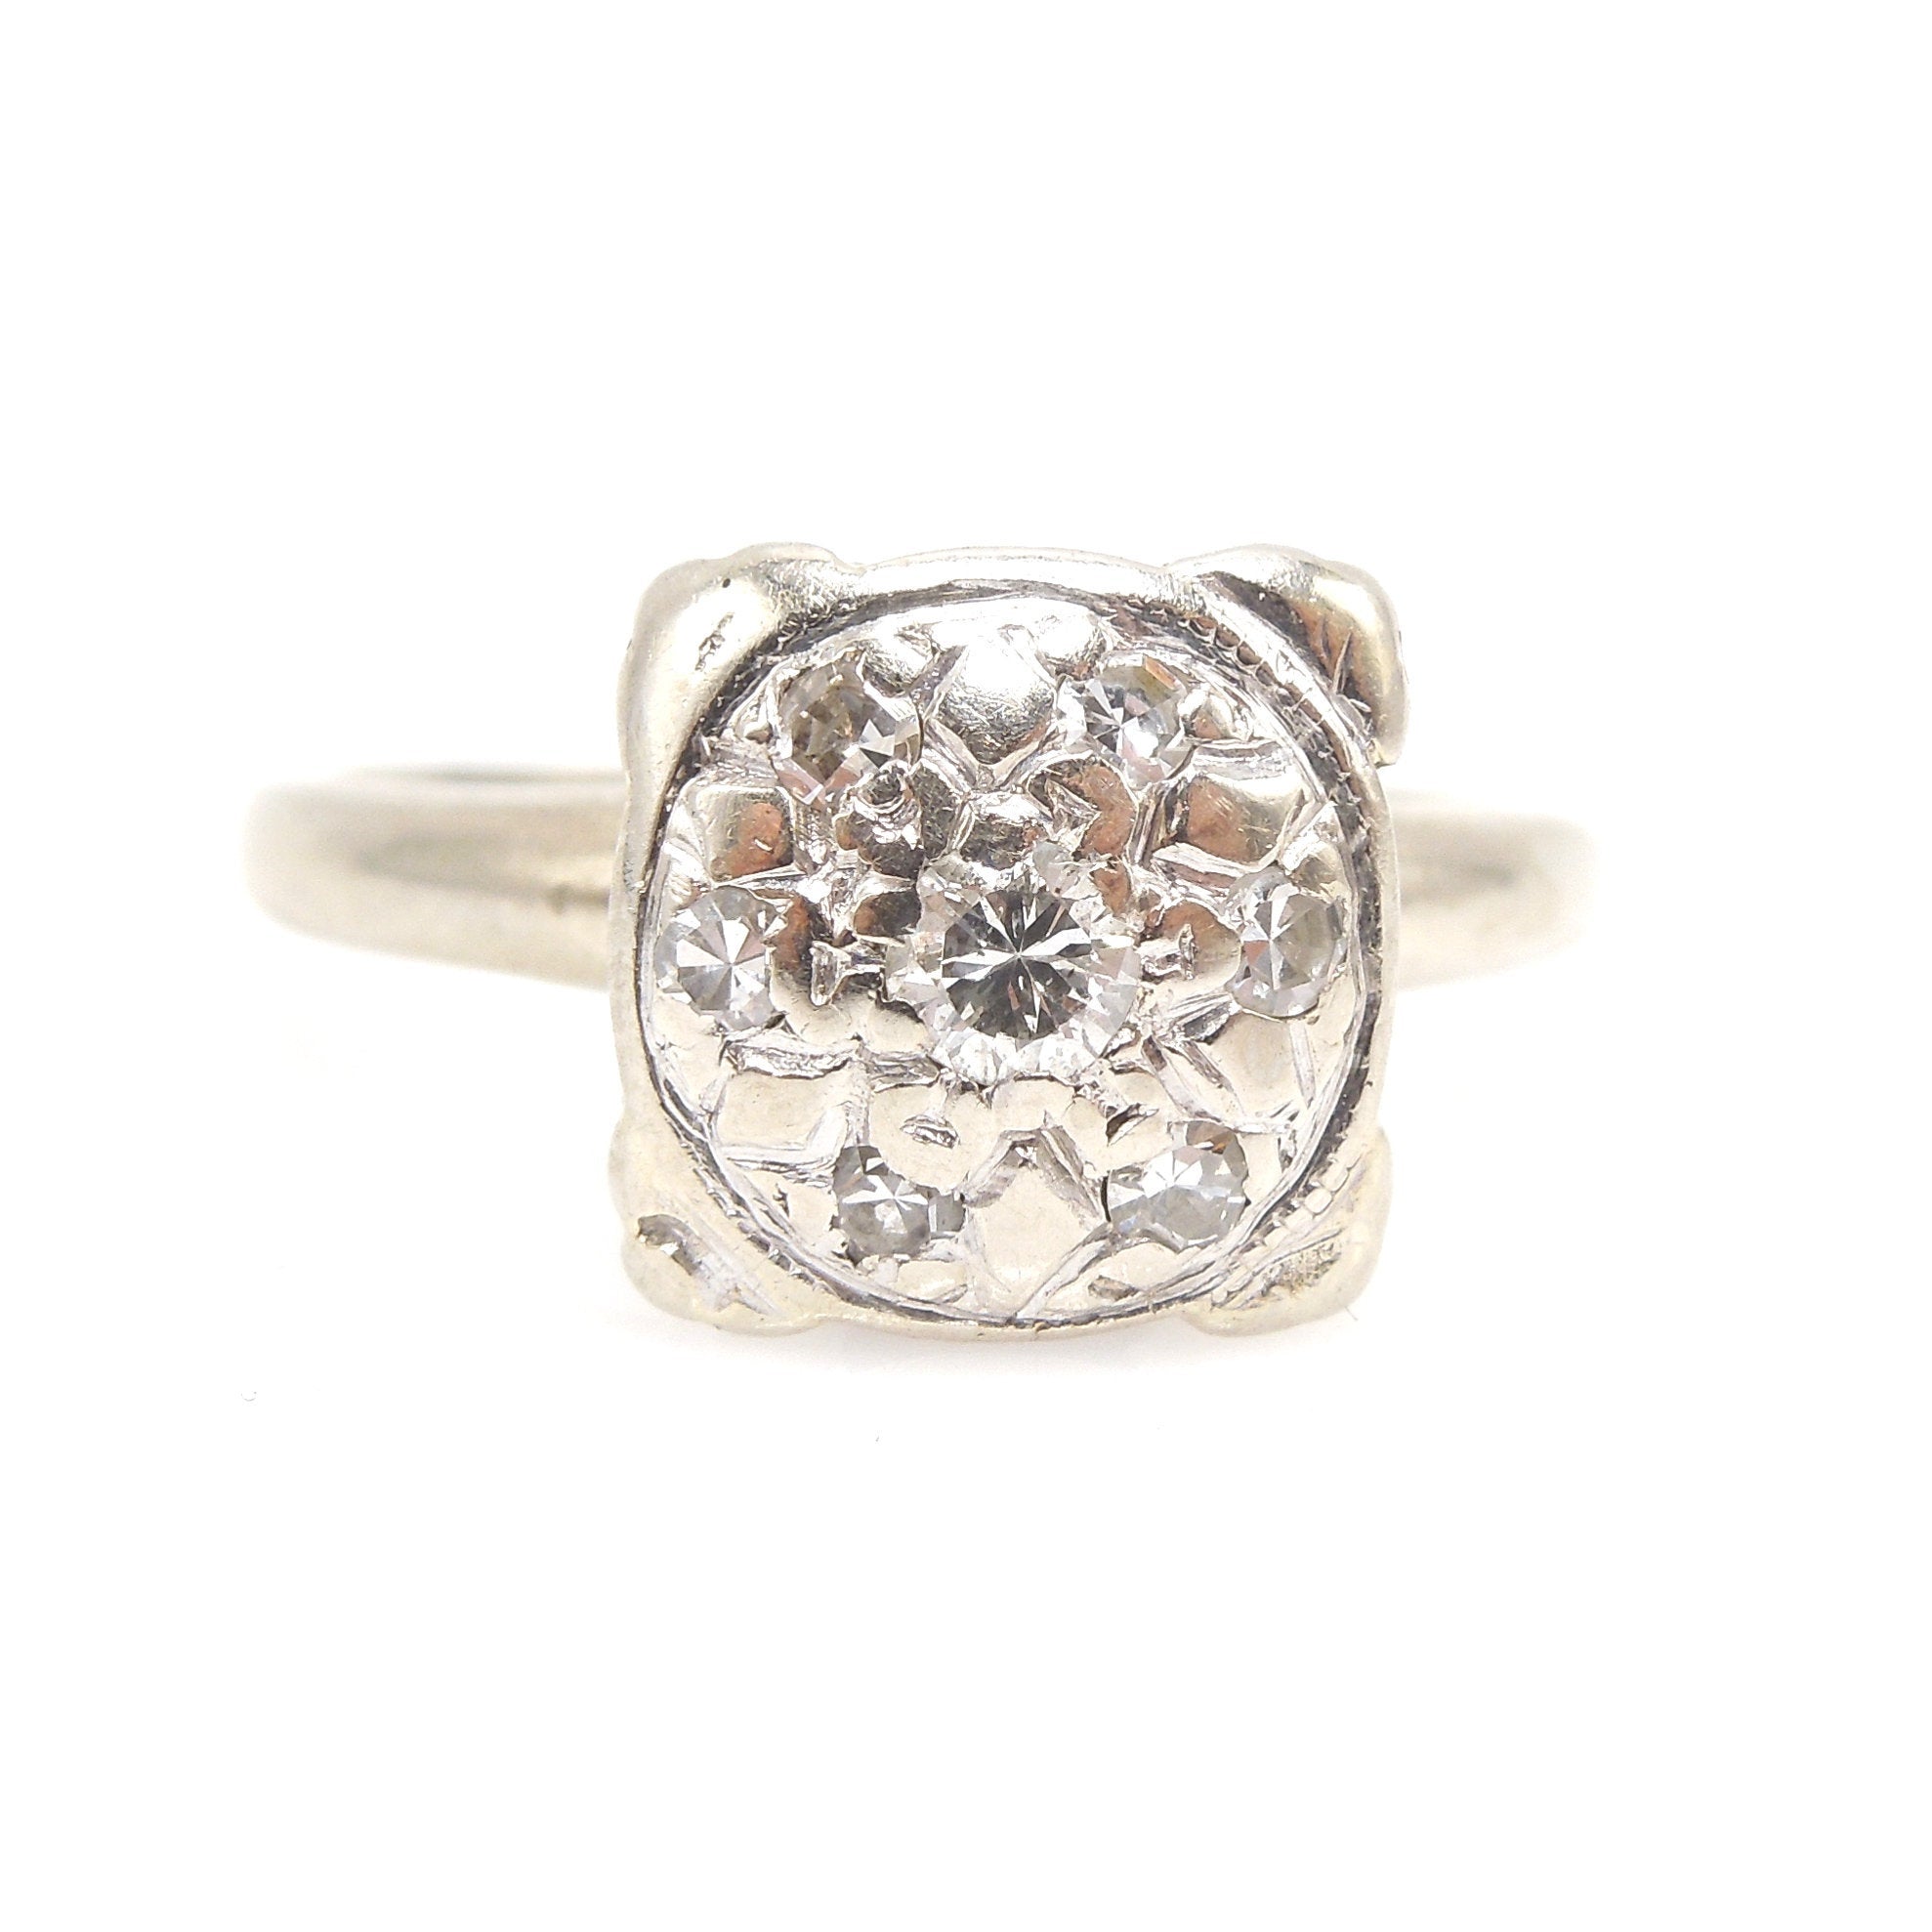 1940s 14K White Gold Diamond Cluster Engagement Ring